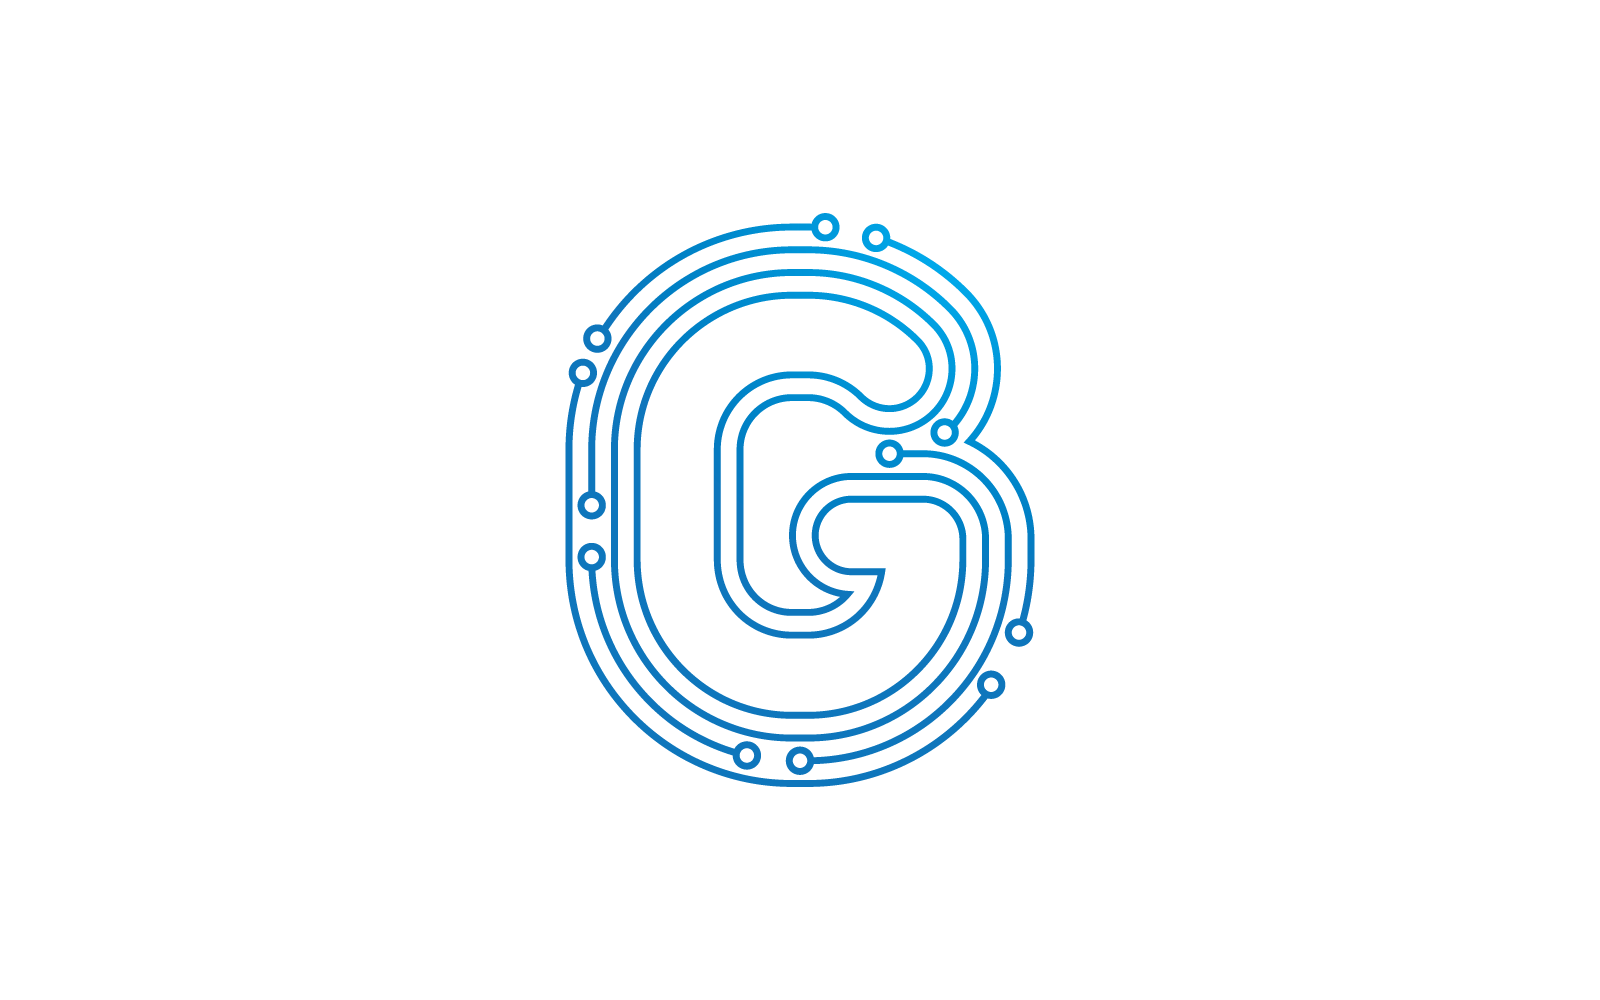 Начальная буква G. Иллюстрация вектора логотипа схемы.